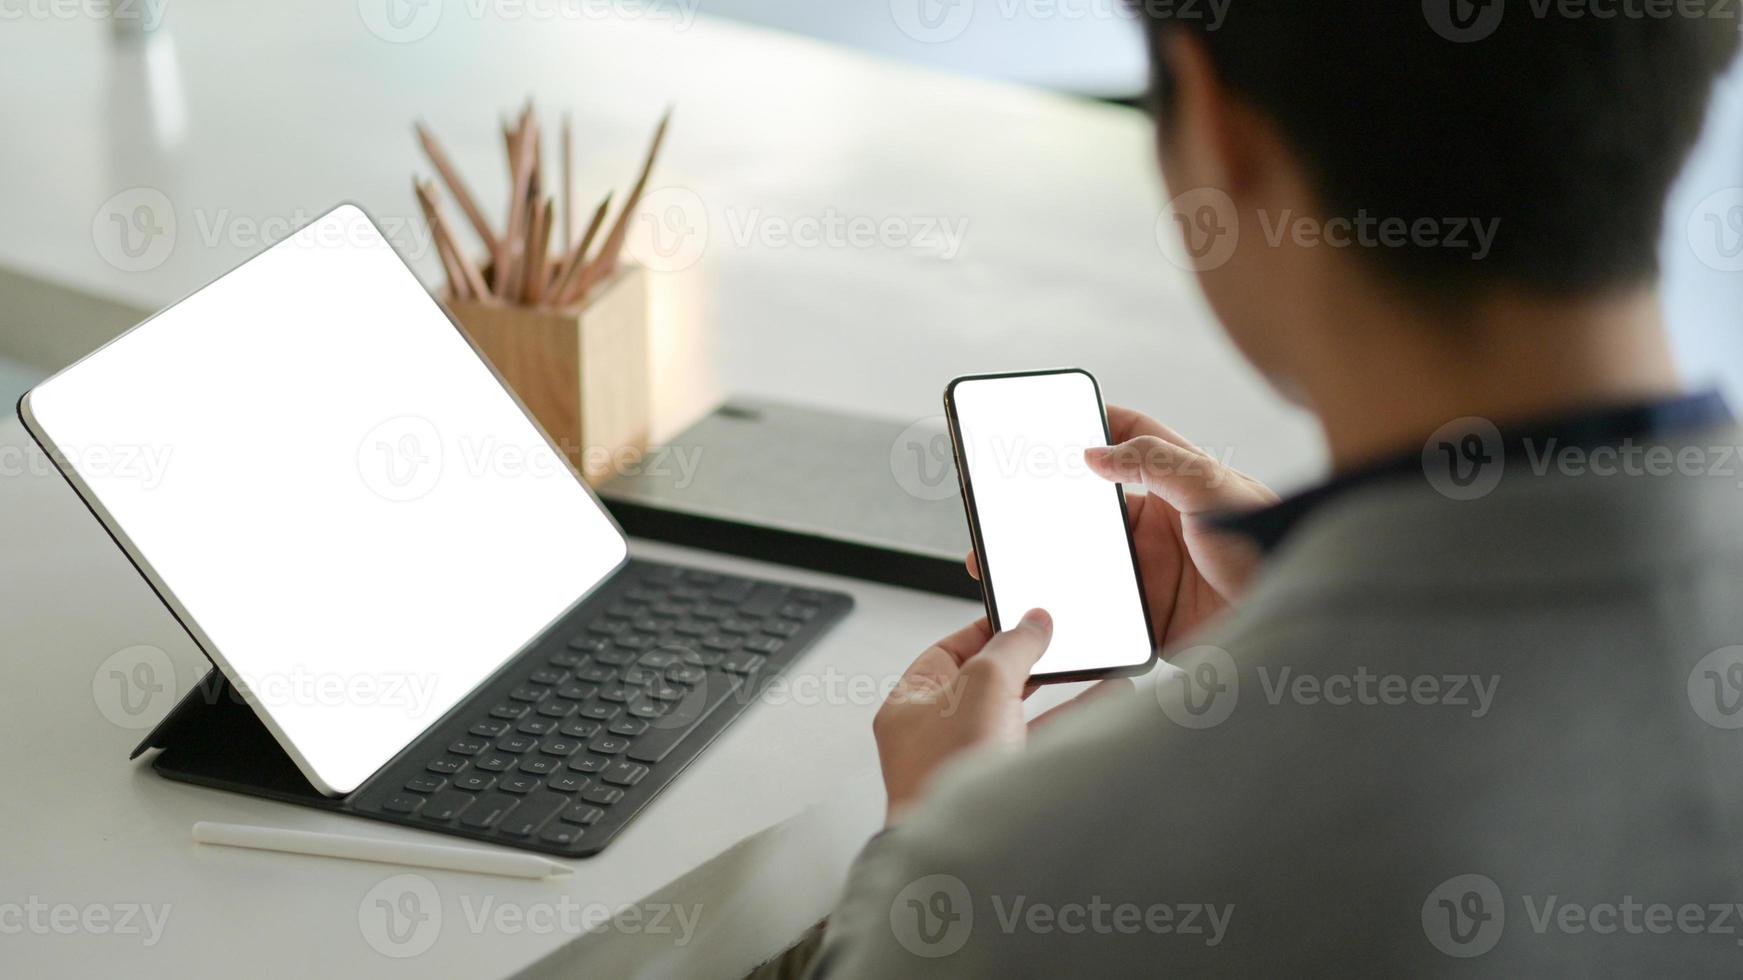 jonge zakenman houdt een smartphone met een leeg scherm in de hand en een laptop met een leeg scherm op het bureau. foto